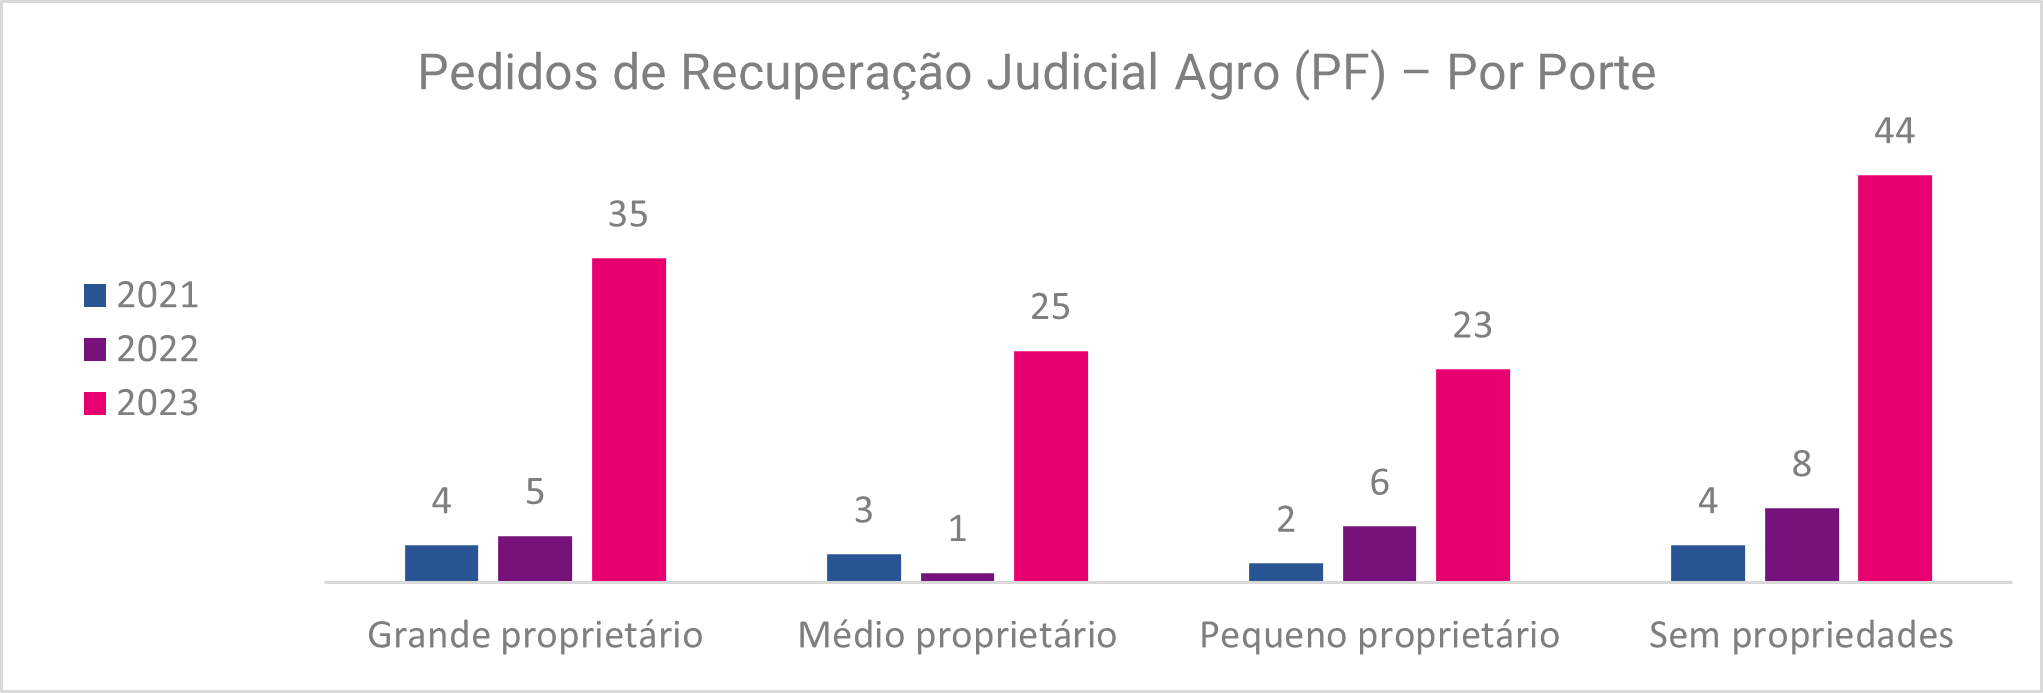 Gráfico com dados sobre os pedidos de recuperação judicial de agro dividido por porte da empresa